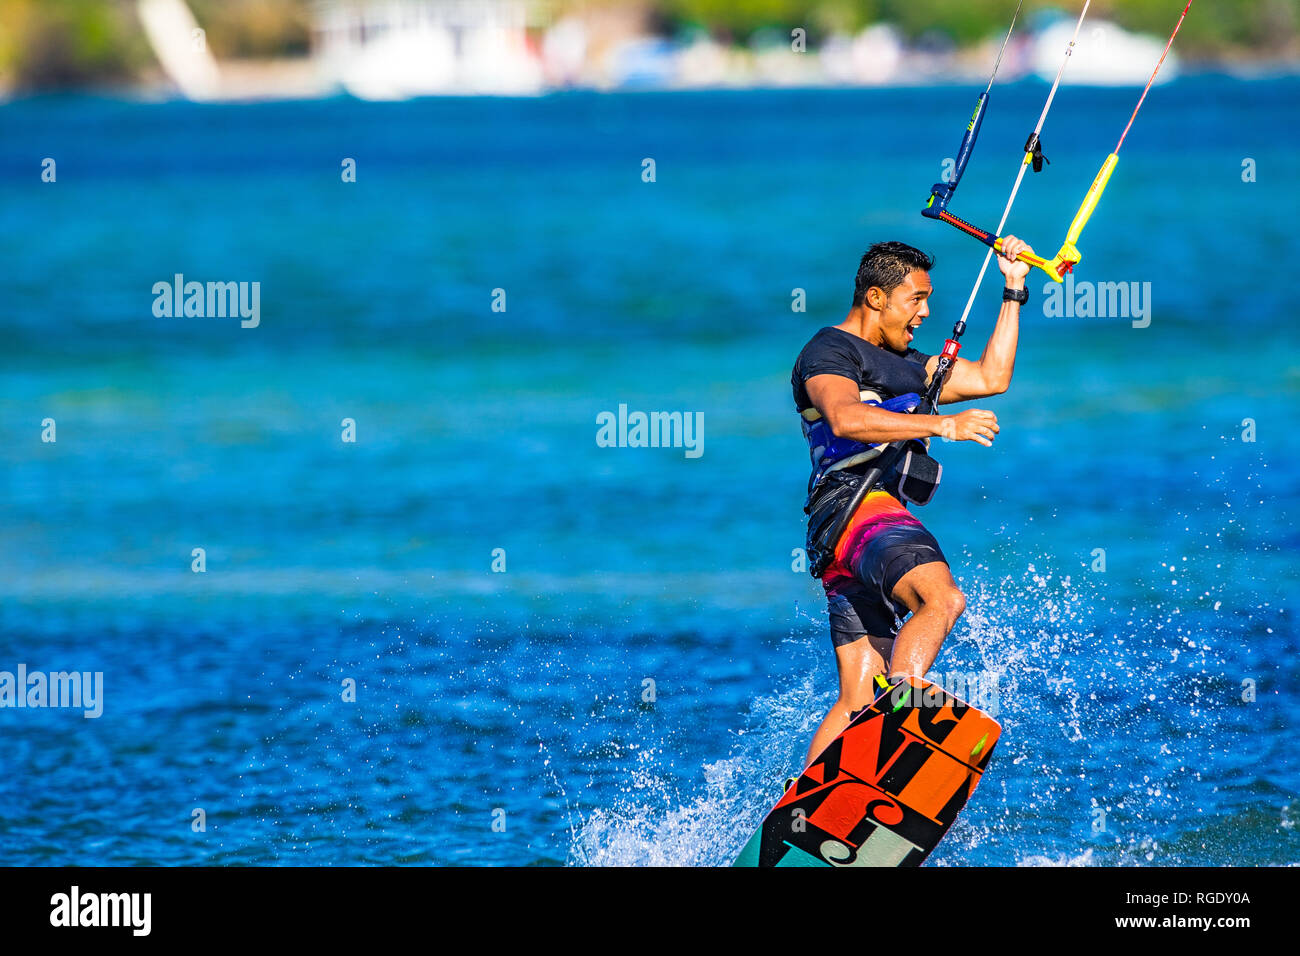 Kitesurfer sulla Costa del Sole tira fuori alcune mosse acrobatiche sulle acque blu turchese nel Queensland, Australia Foto Stock